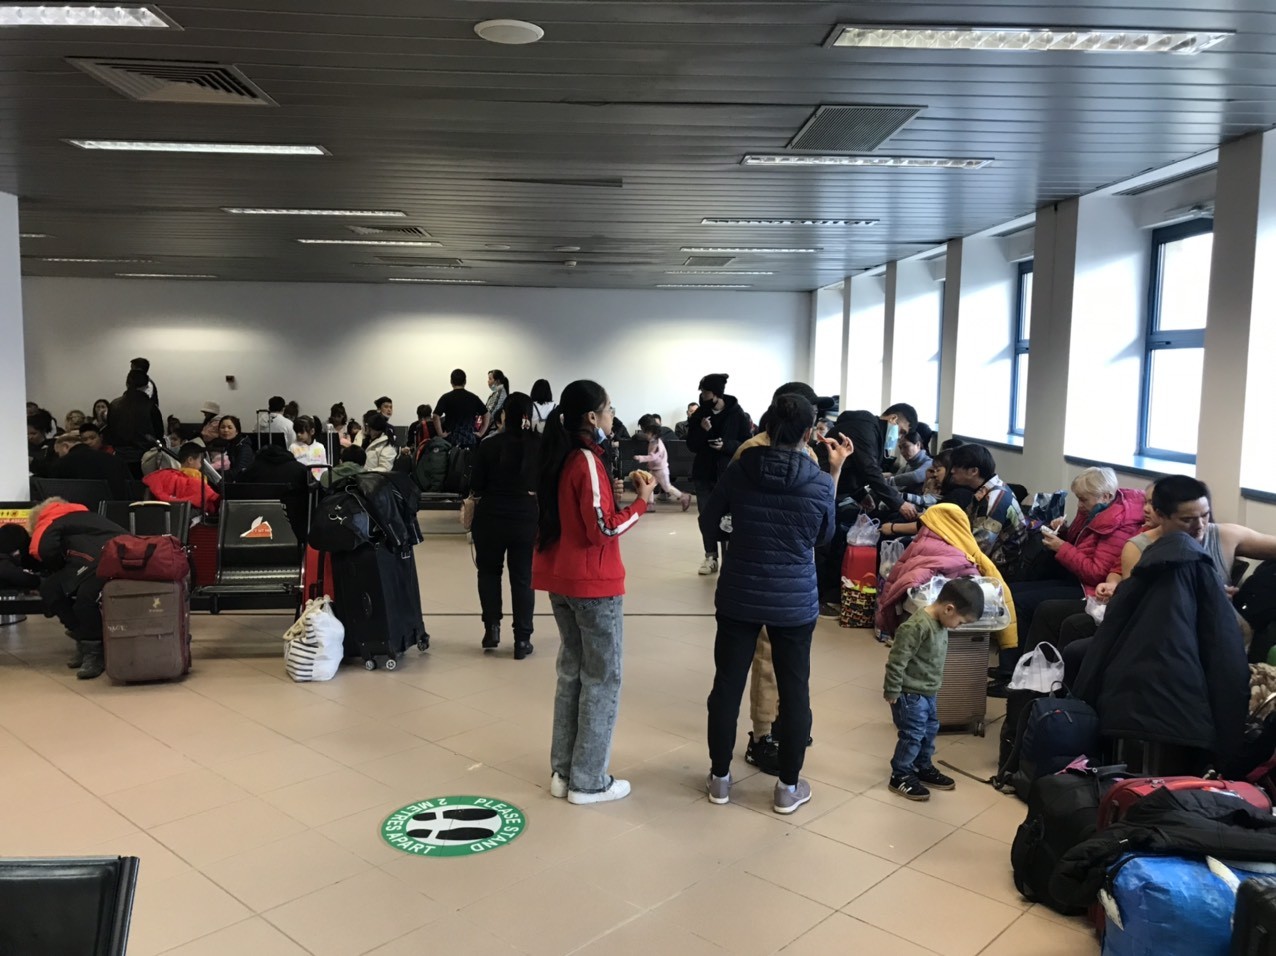 12 tiếng của người Việt ở Ukraine trước khi lên chuyến bay sơ tán đầu tiên